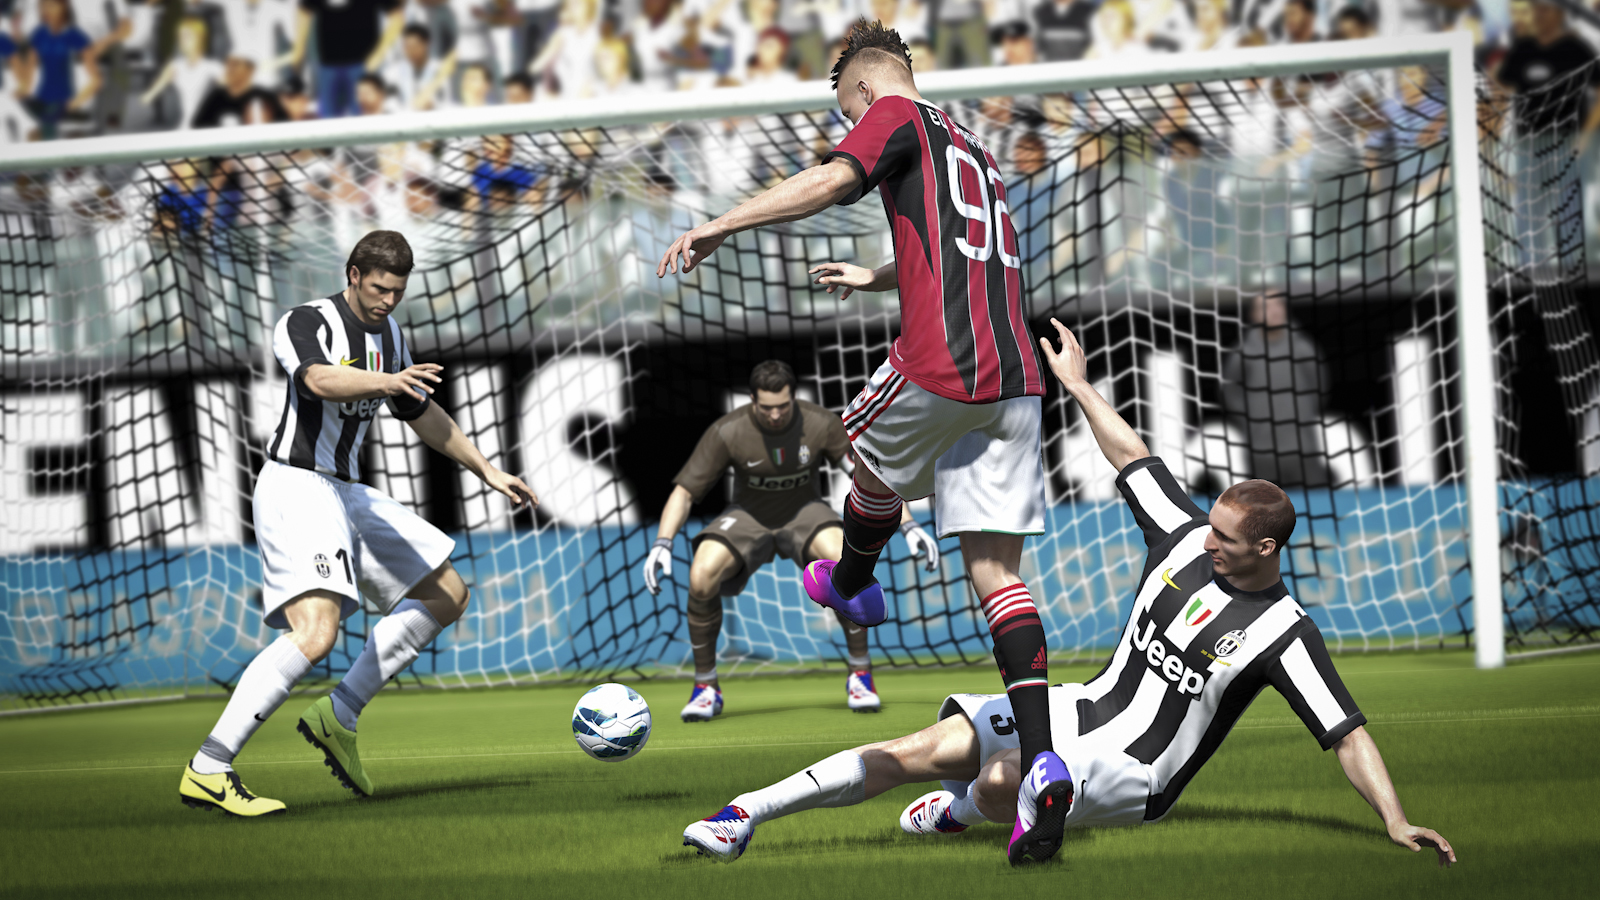 Nhờ engine Ignite, FIFA 15 sẽ đẹp nhất khi chơi trên PC